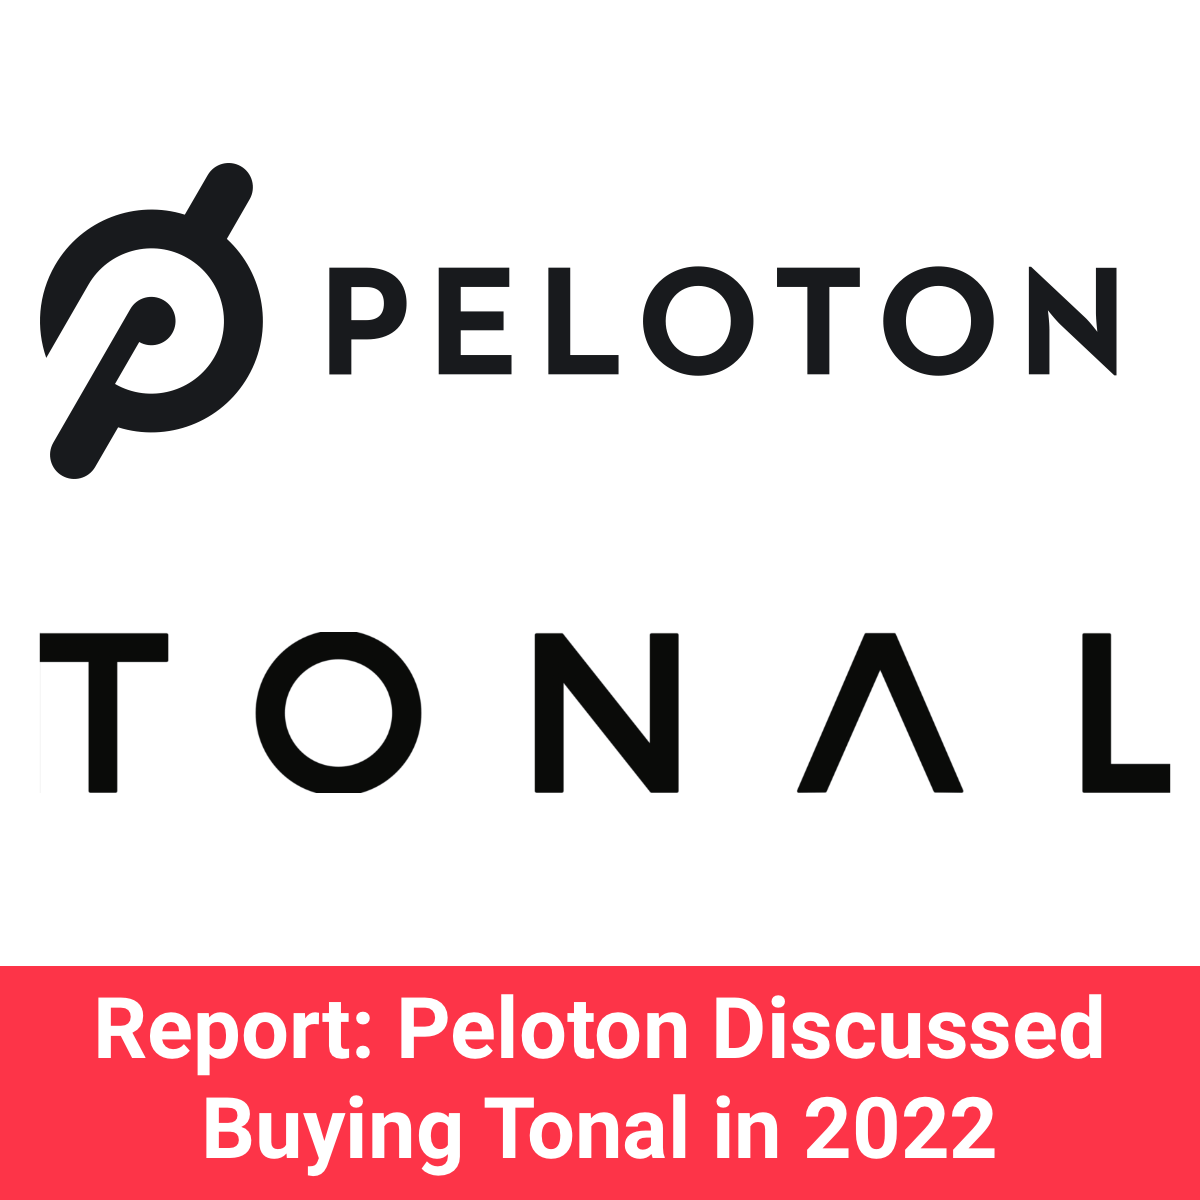 Is Peloton acquiring Tonal?